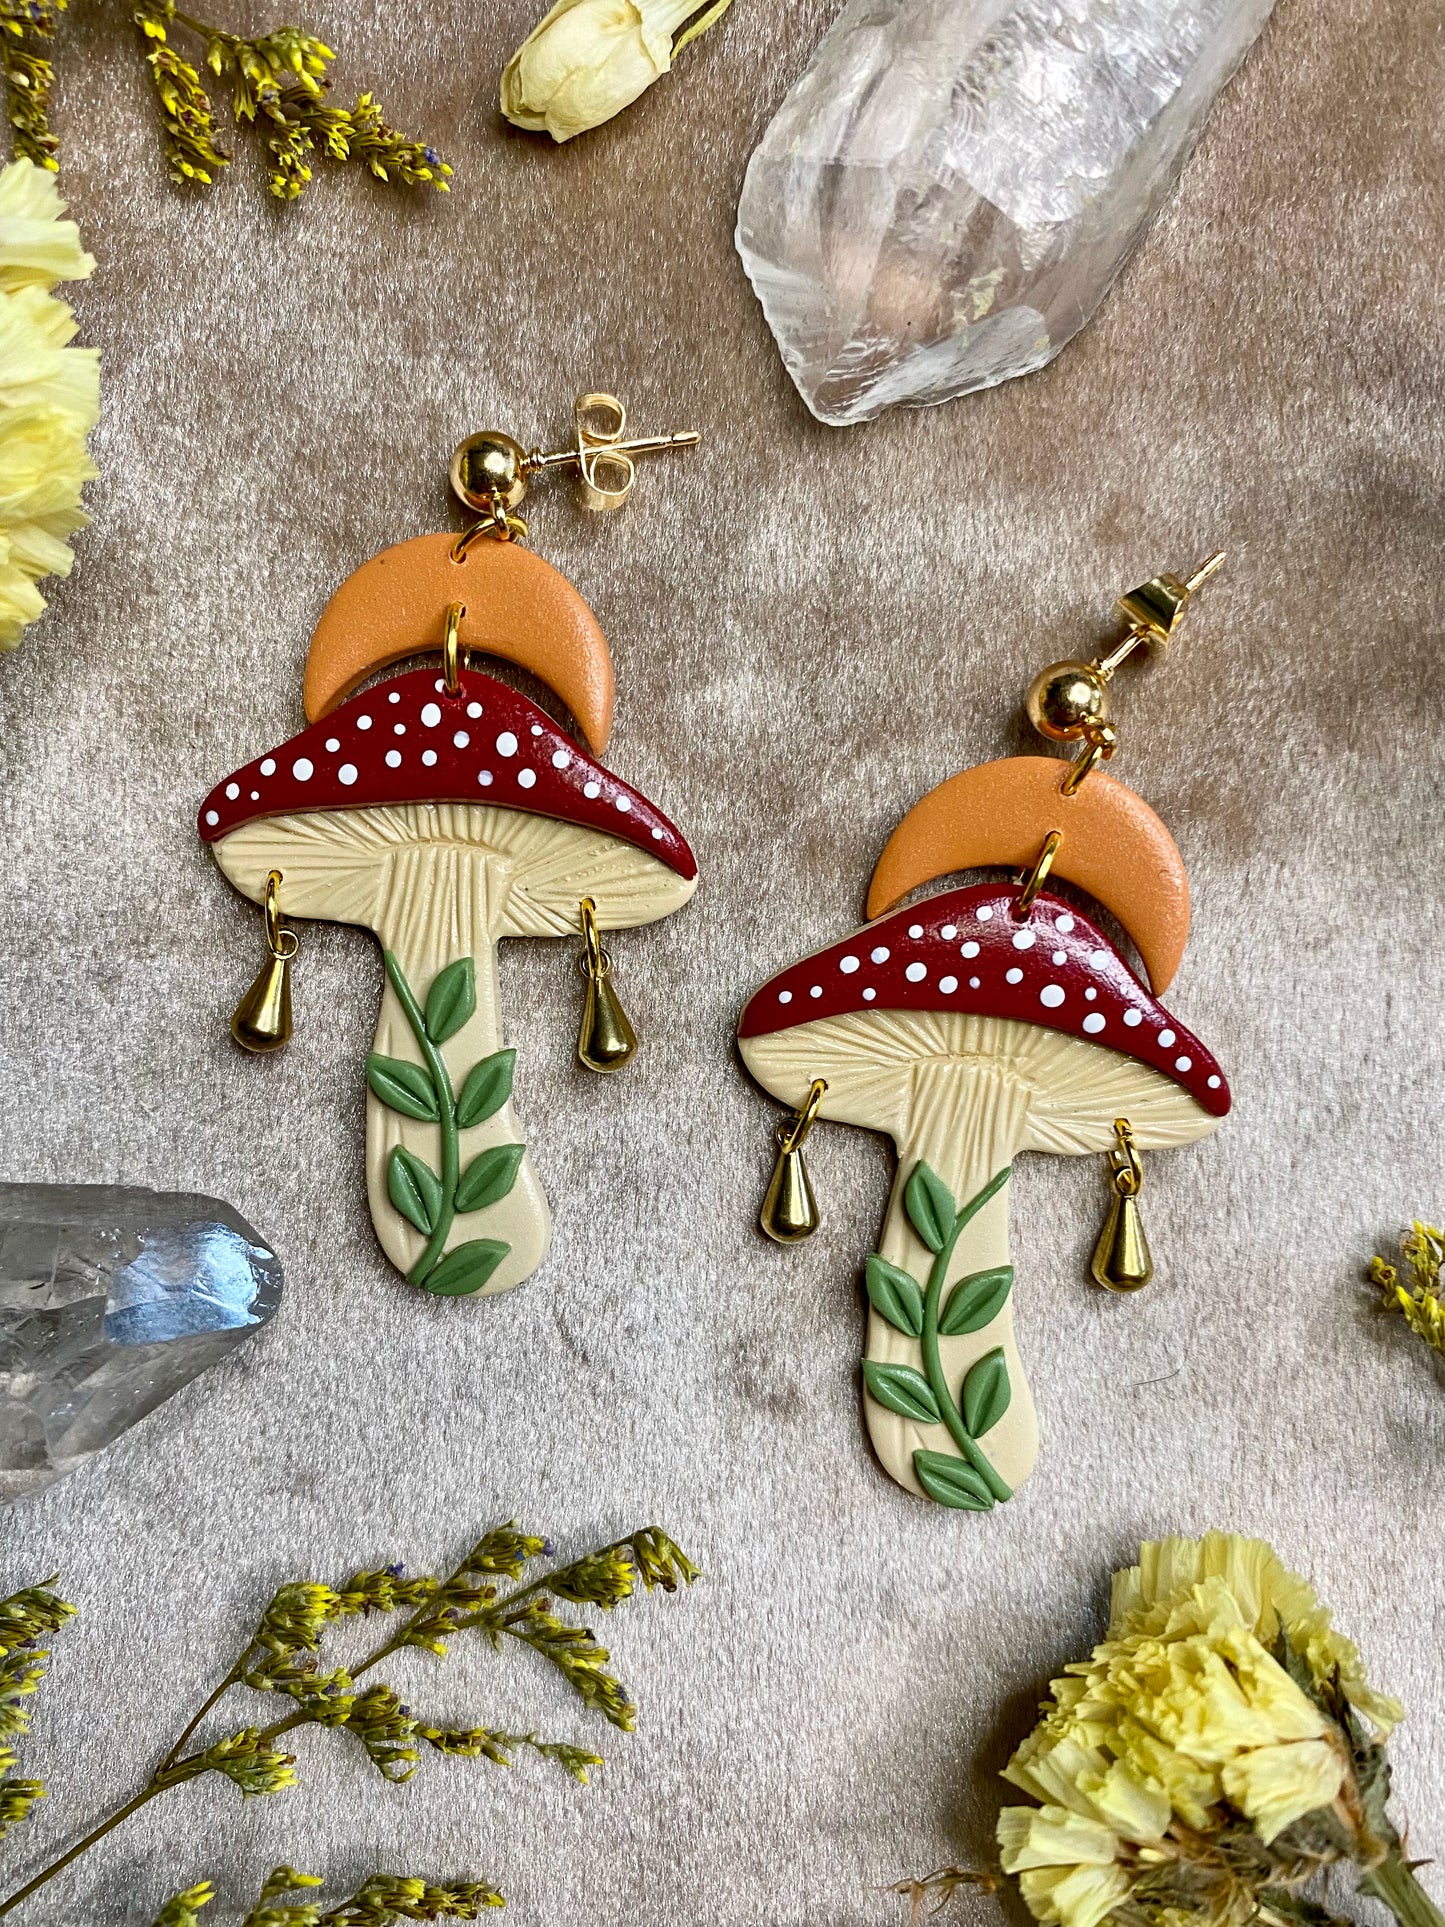 Red Cap Magic Mushroom Earrings